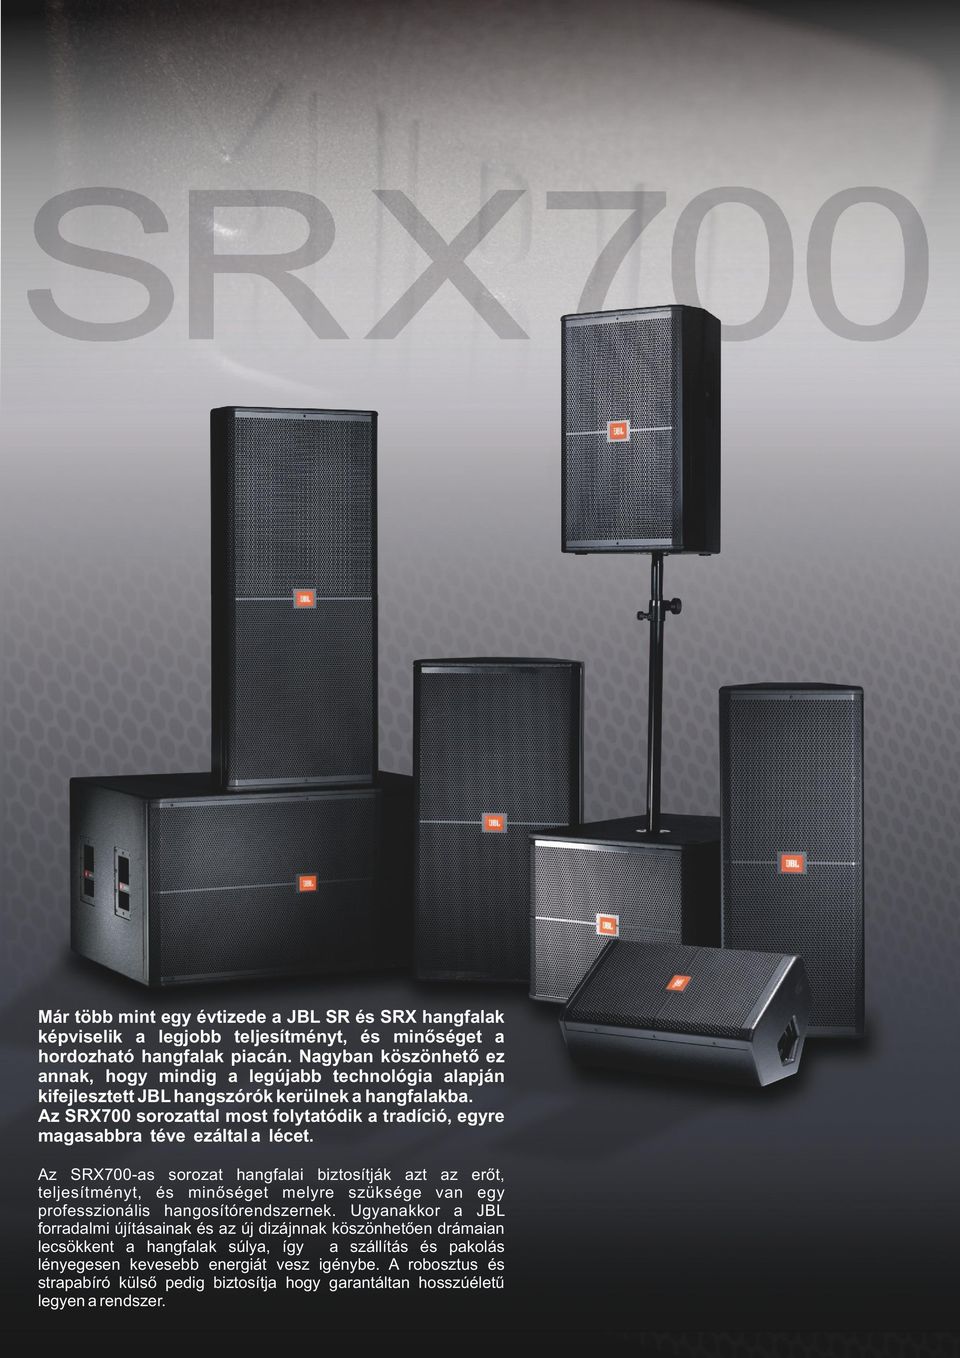 Az SRX700 sorozattal most folytatódik a tradíció, egyre magasabbra téve ezáltal a lécet.